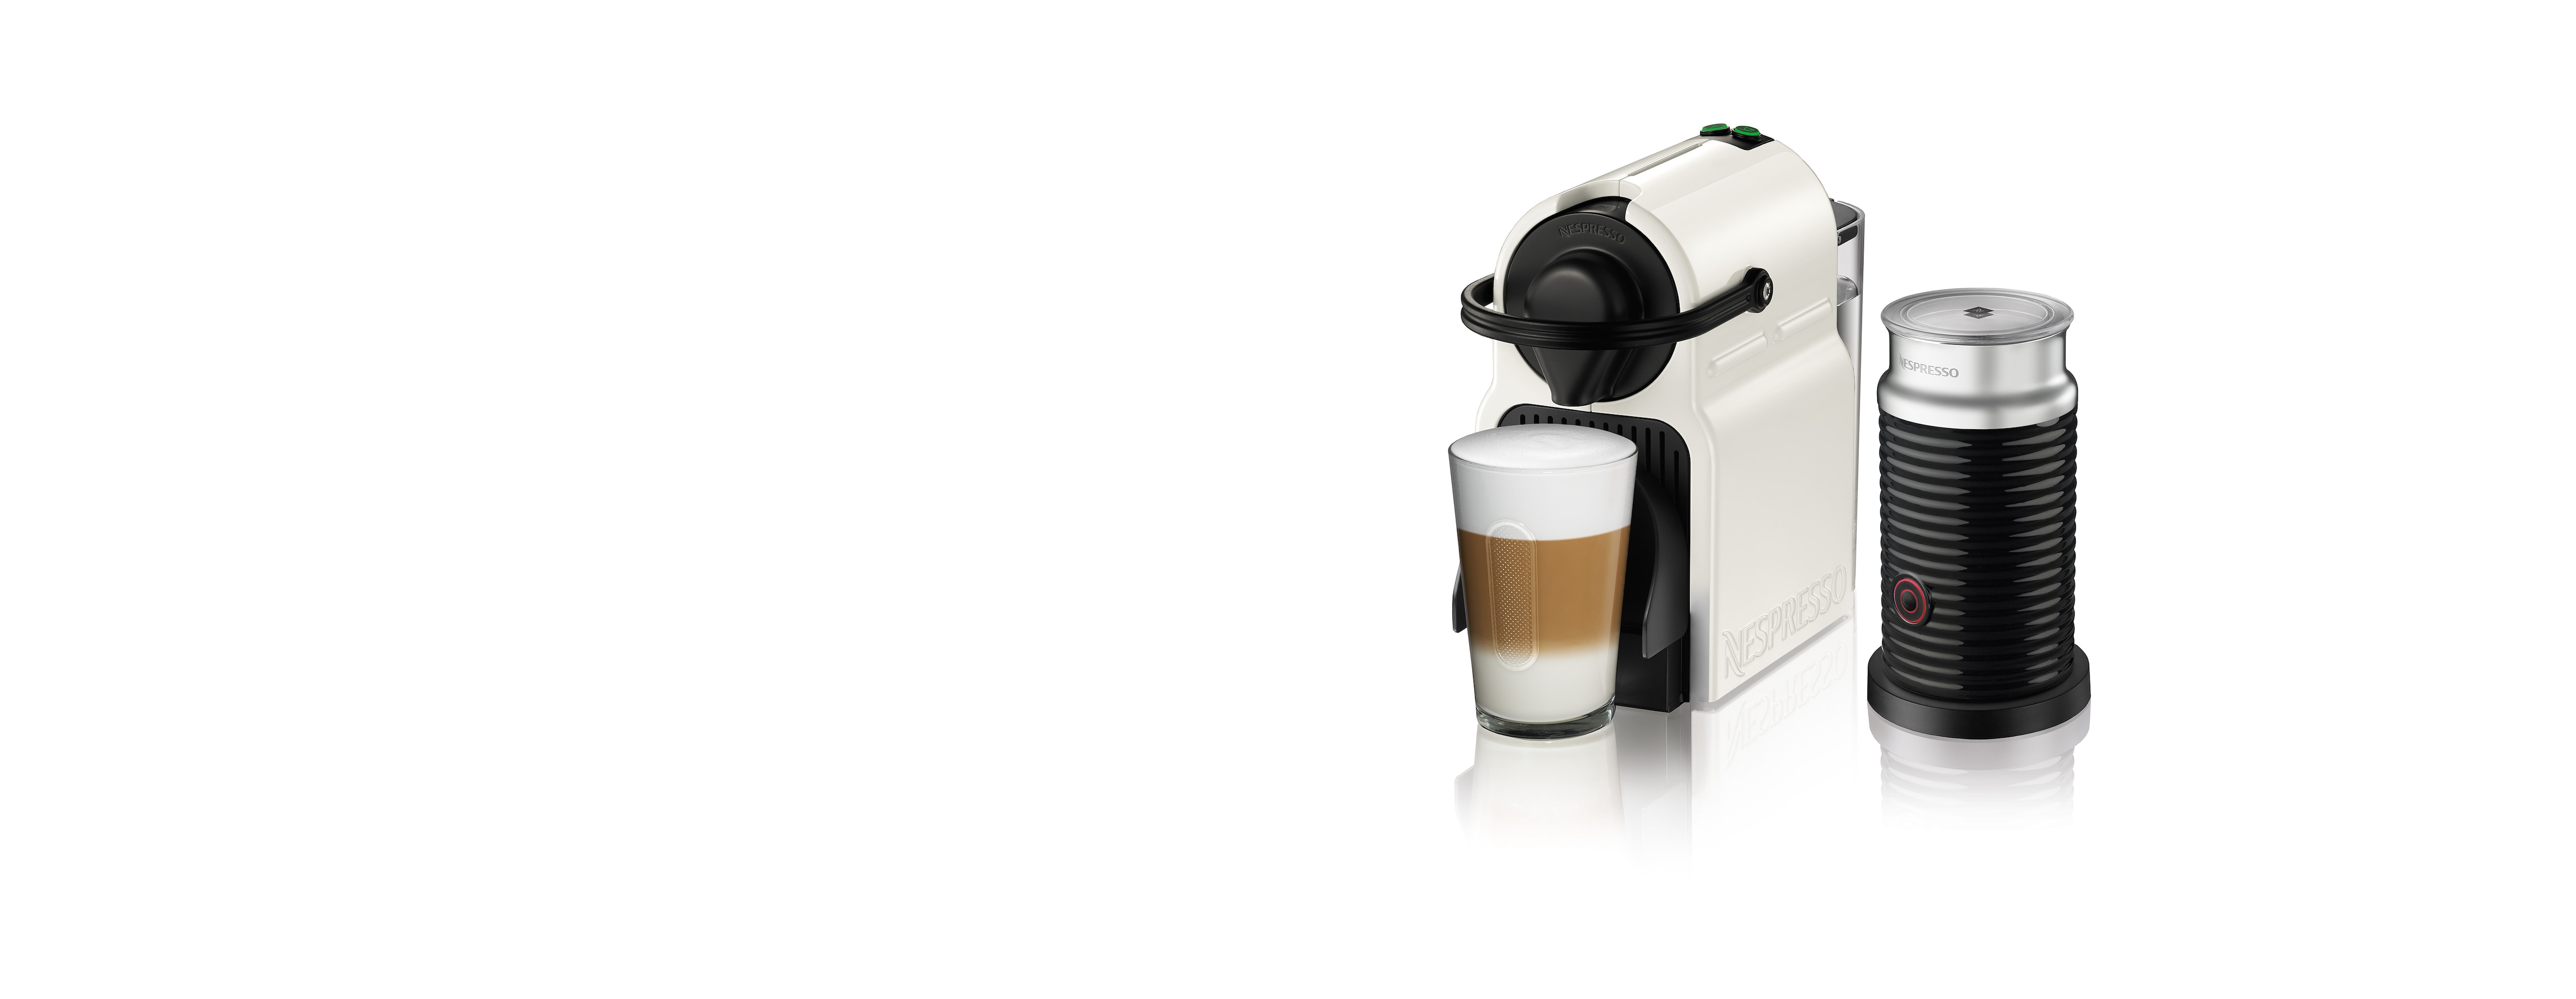 Bundle Nespresso C40 Inissia White & Aeroccino3 Black